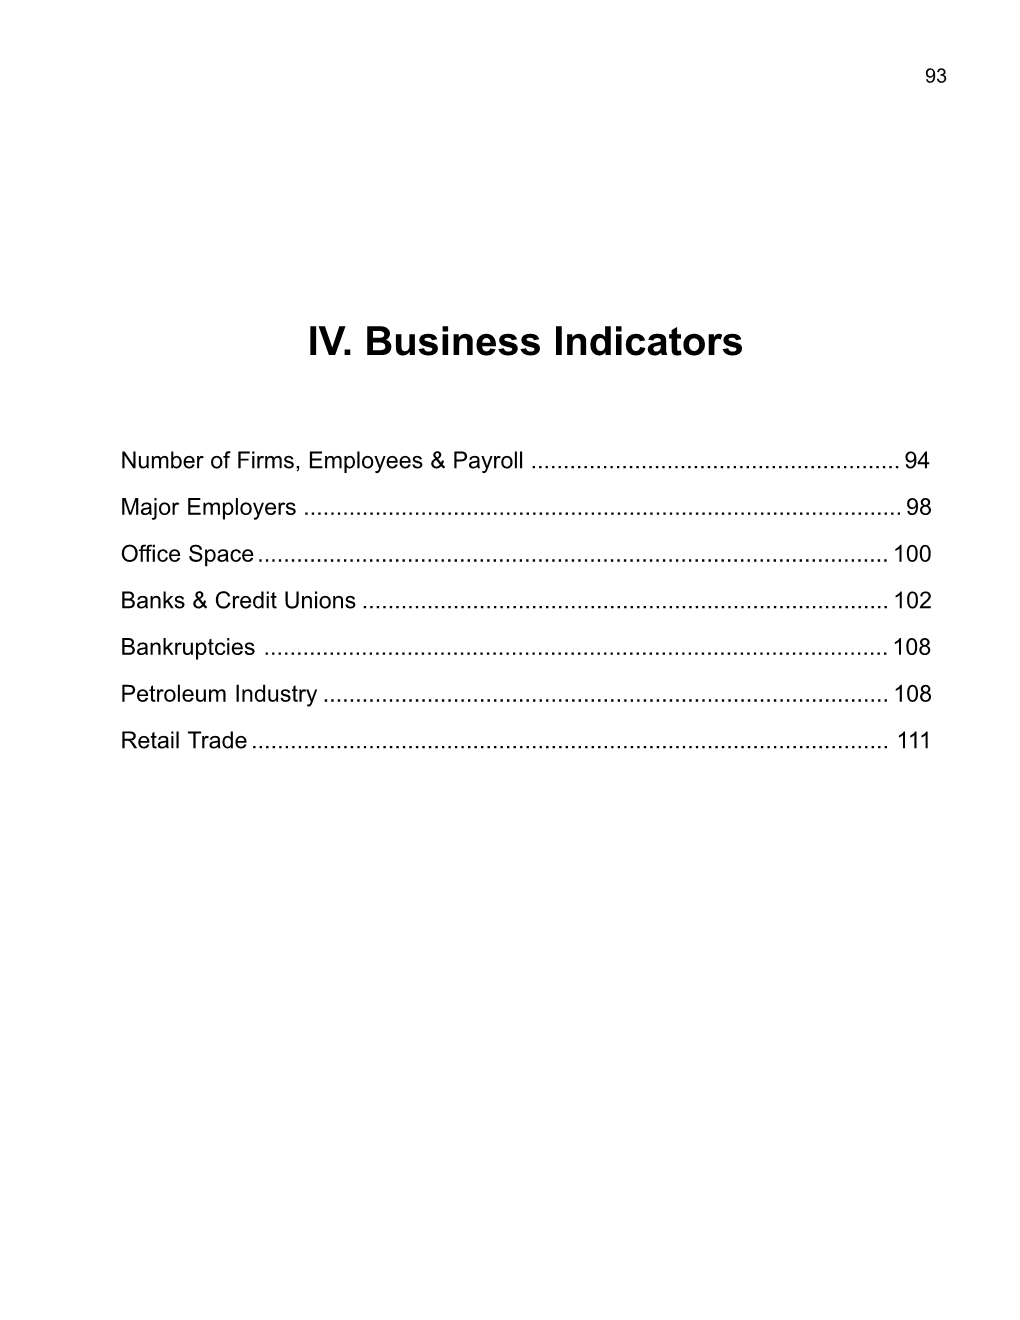 IV. Business Indicators